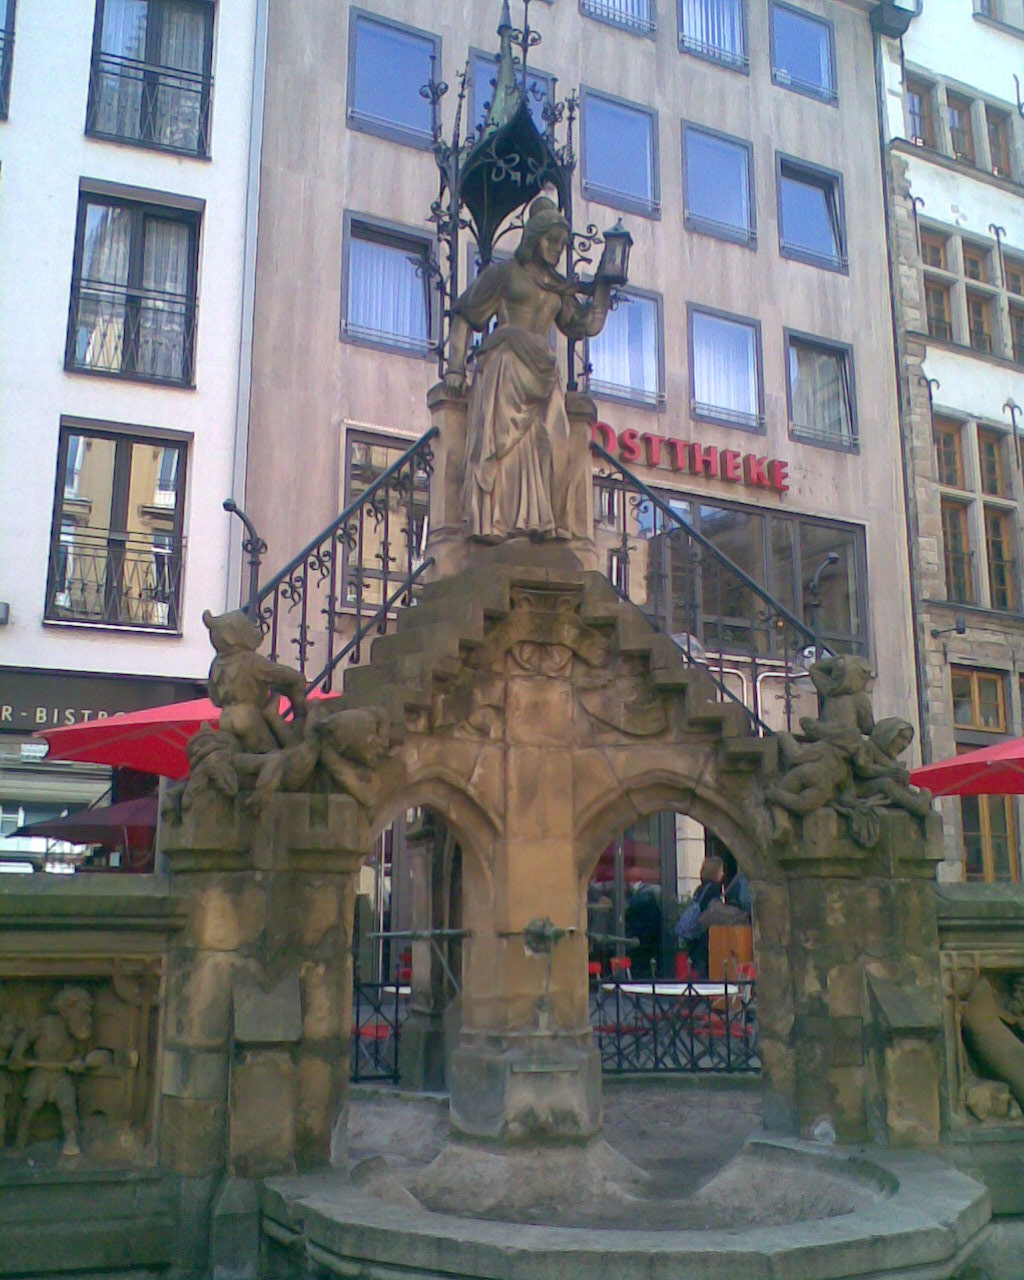 der Heinzelmännchenbrunnen direkt vor dem Brauhaus